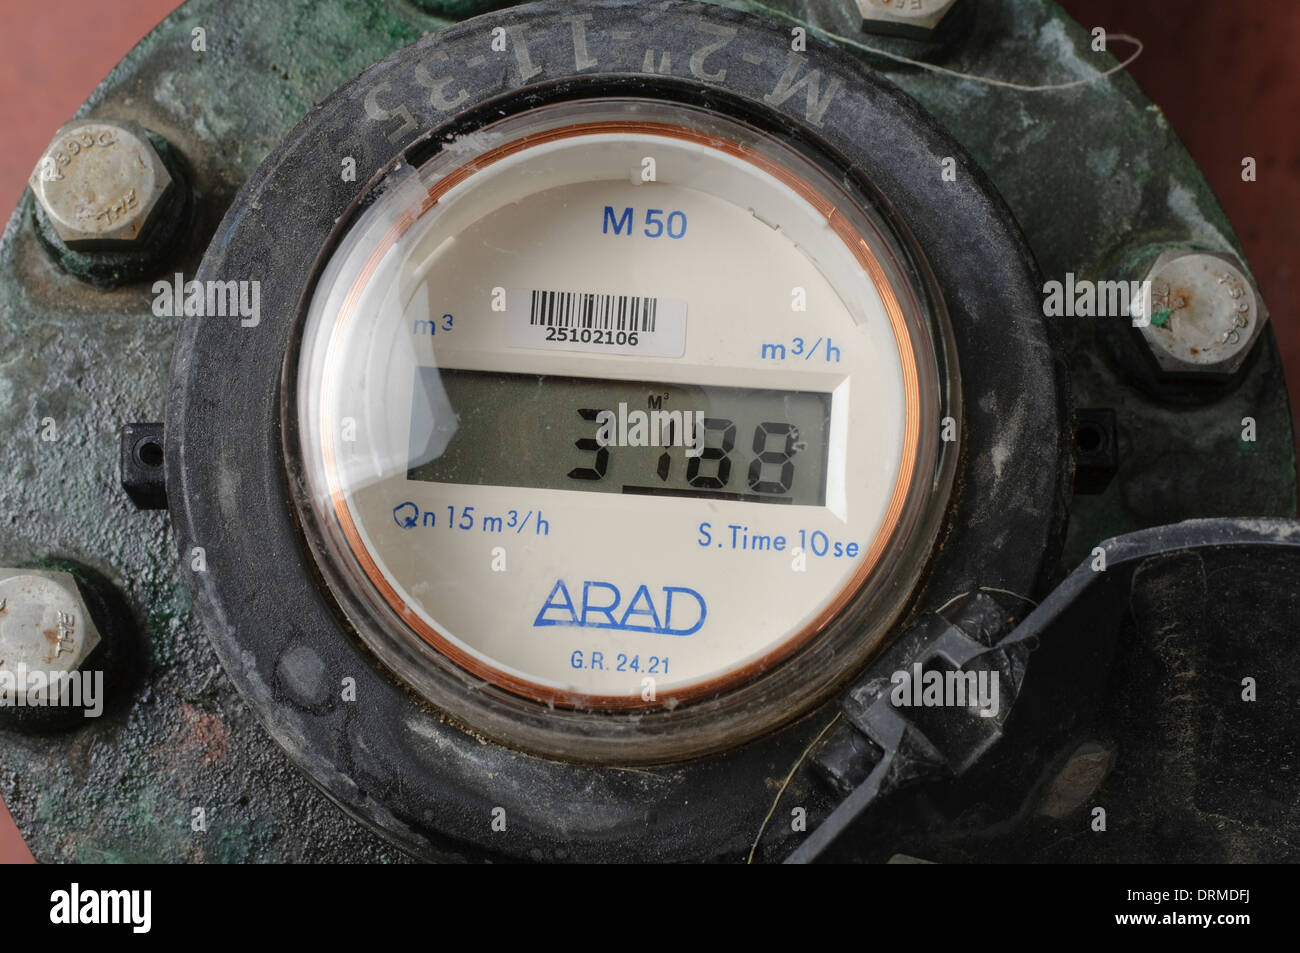 Medidor de flujo de agua con pantalla digital mide el caudal horario del  agua en metros cúbicos Fotografía de stock - Alamy